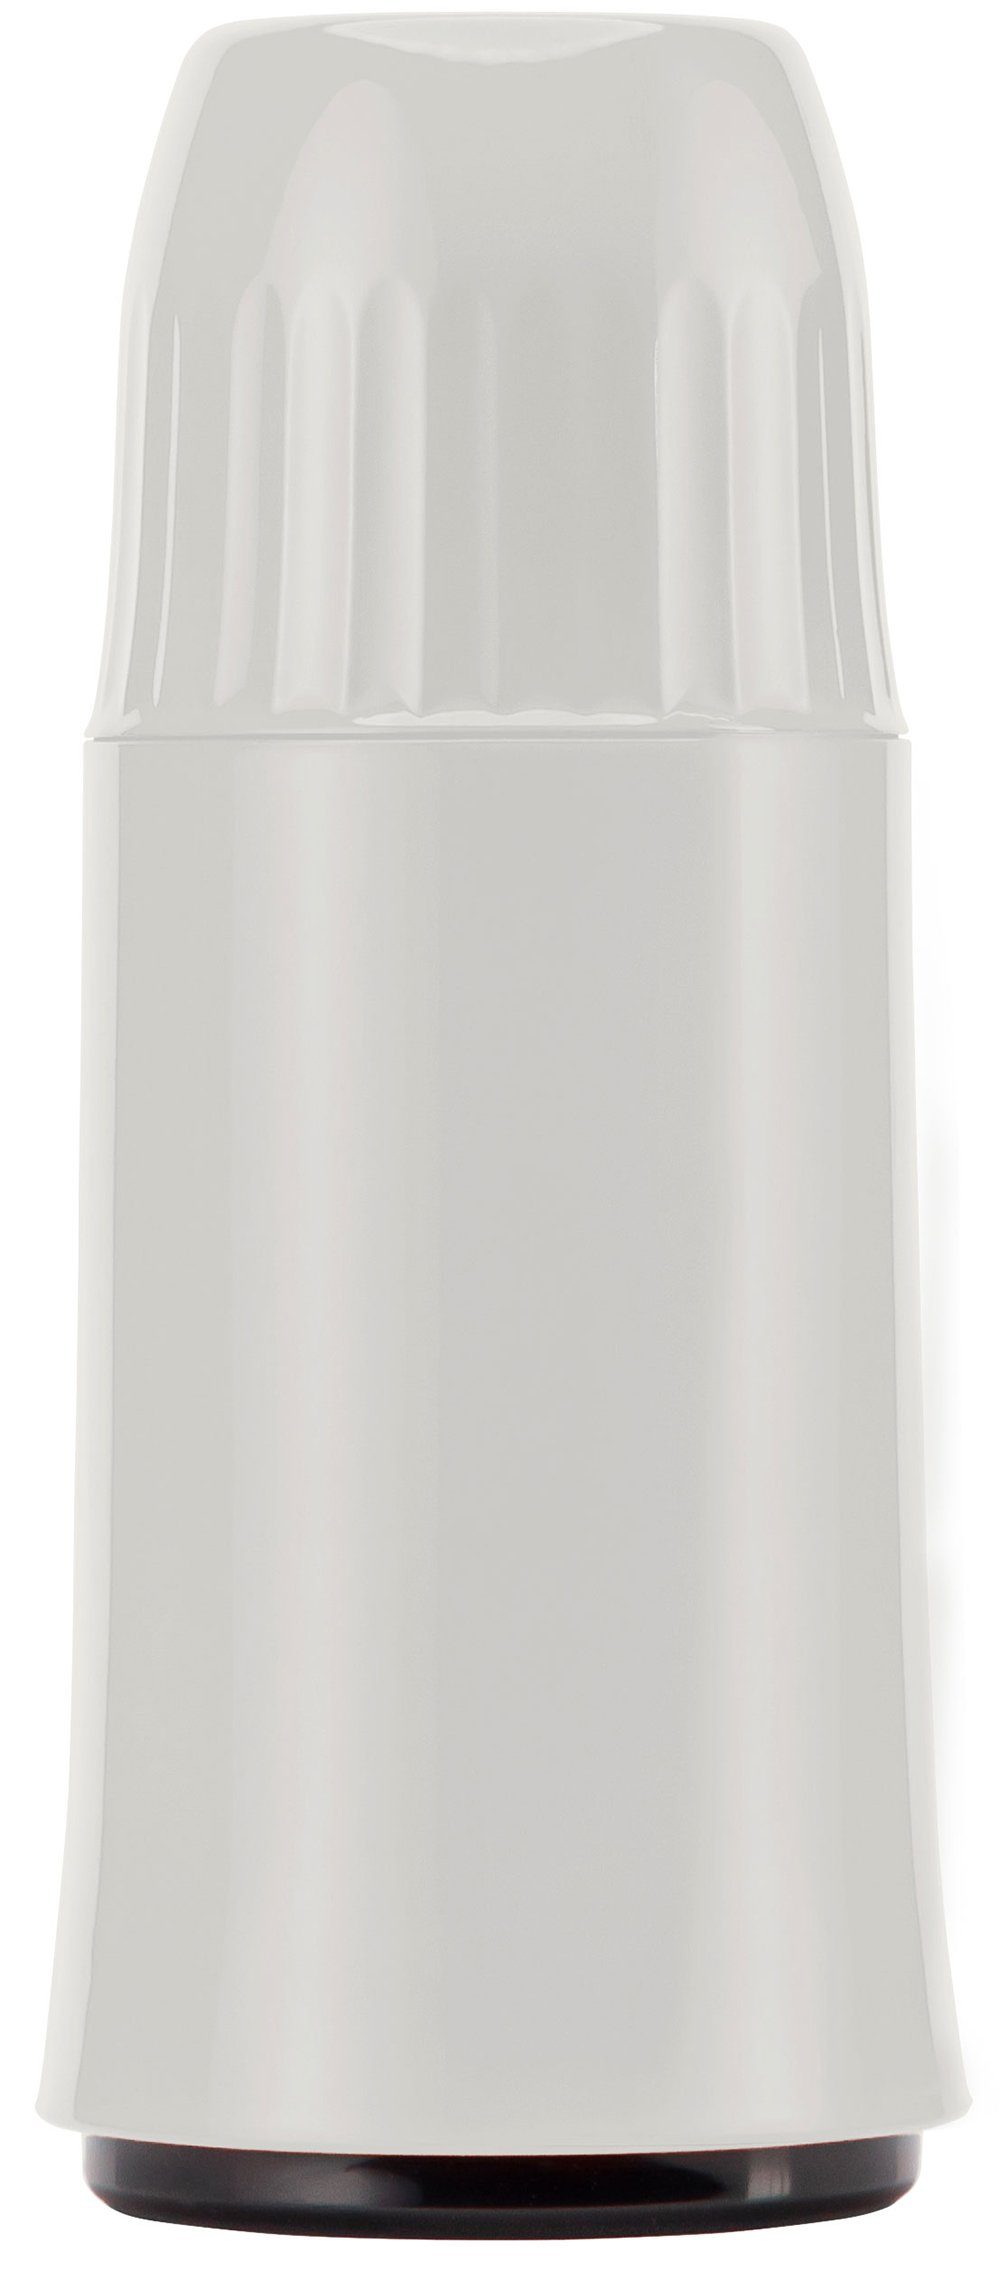 Helios Isolierflasche Rocket, aus Kunststoff weiß | Isolierflaschen